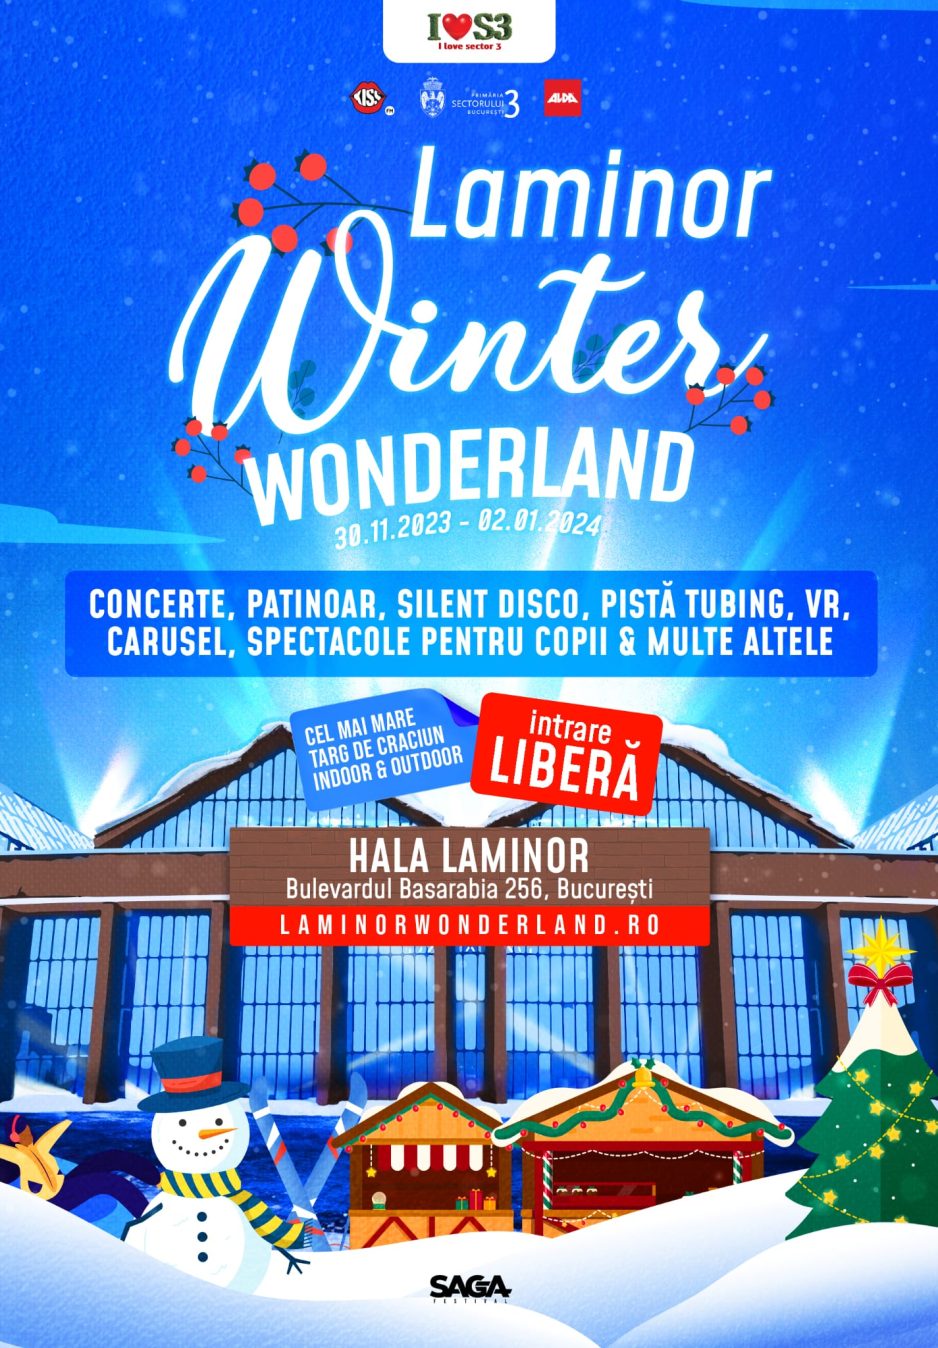 Târgul de Crăciun ﻿ -﻿ București ﻿ -﻿ Hala Laminor ﻿ -﻿ Laminor Wonderland